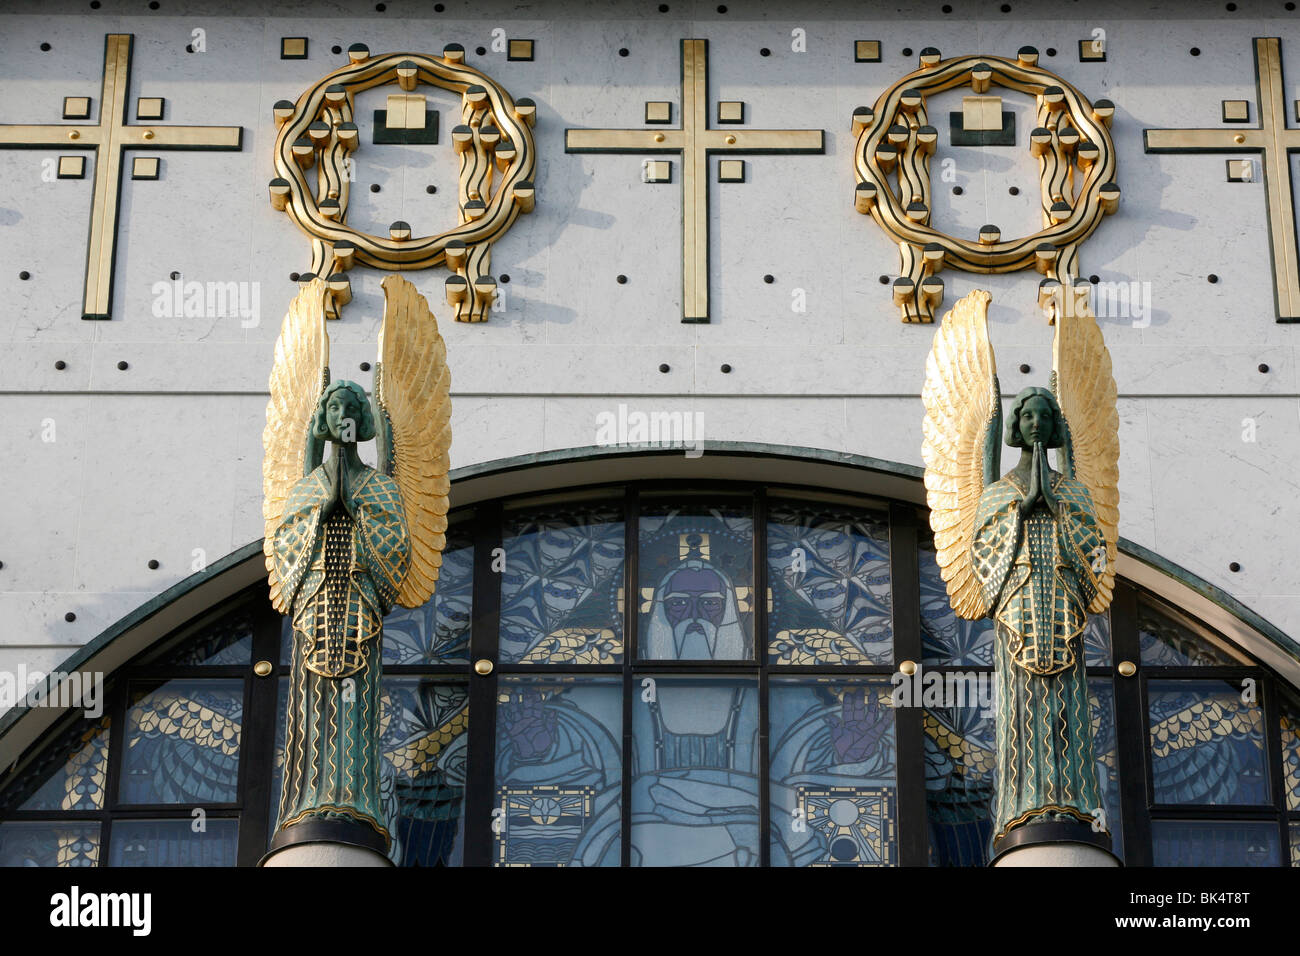 Am Steinhof church angels designed by Othmar Schimtowitz, Vienna, Austria, Europe Stock Photo